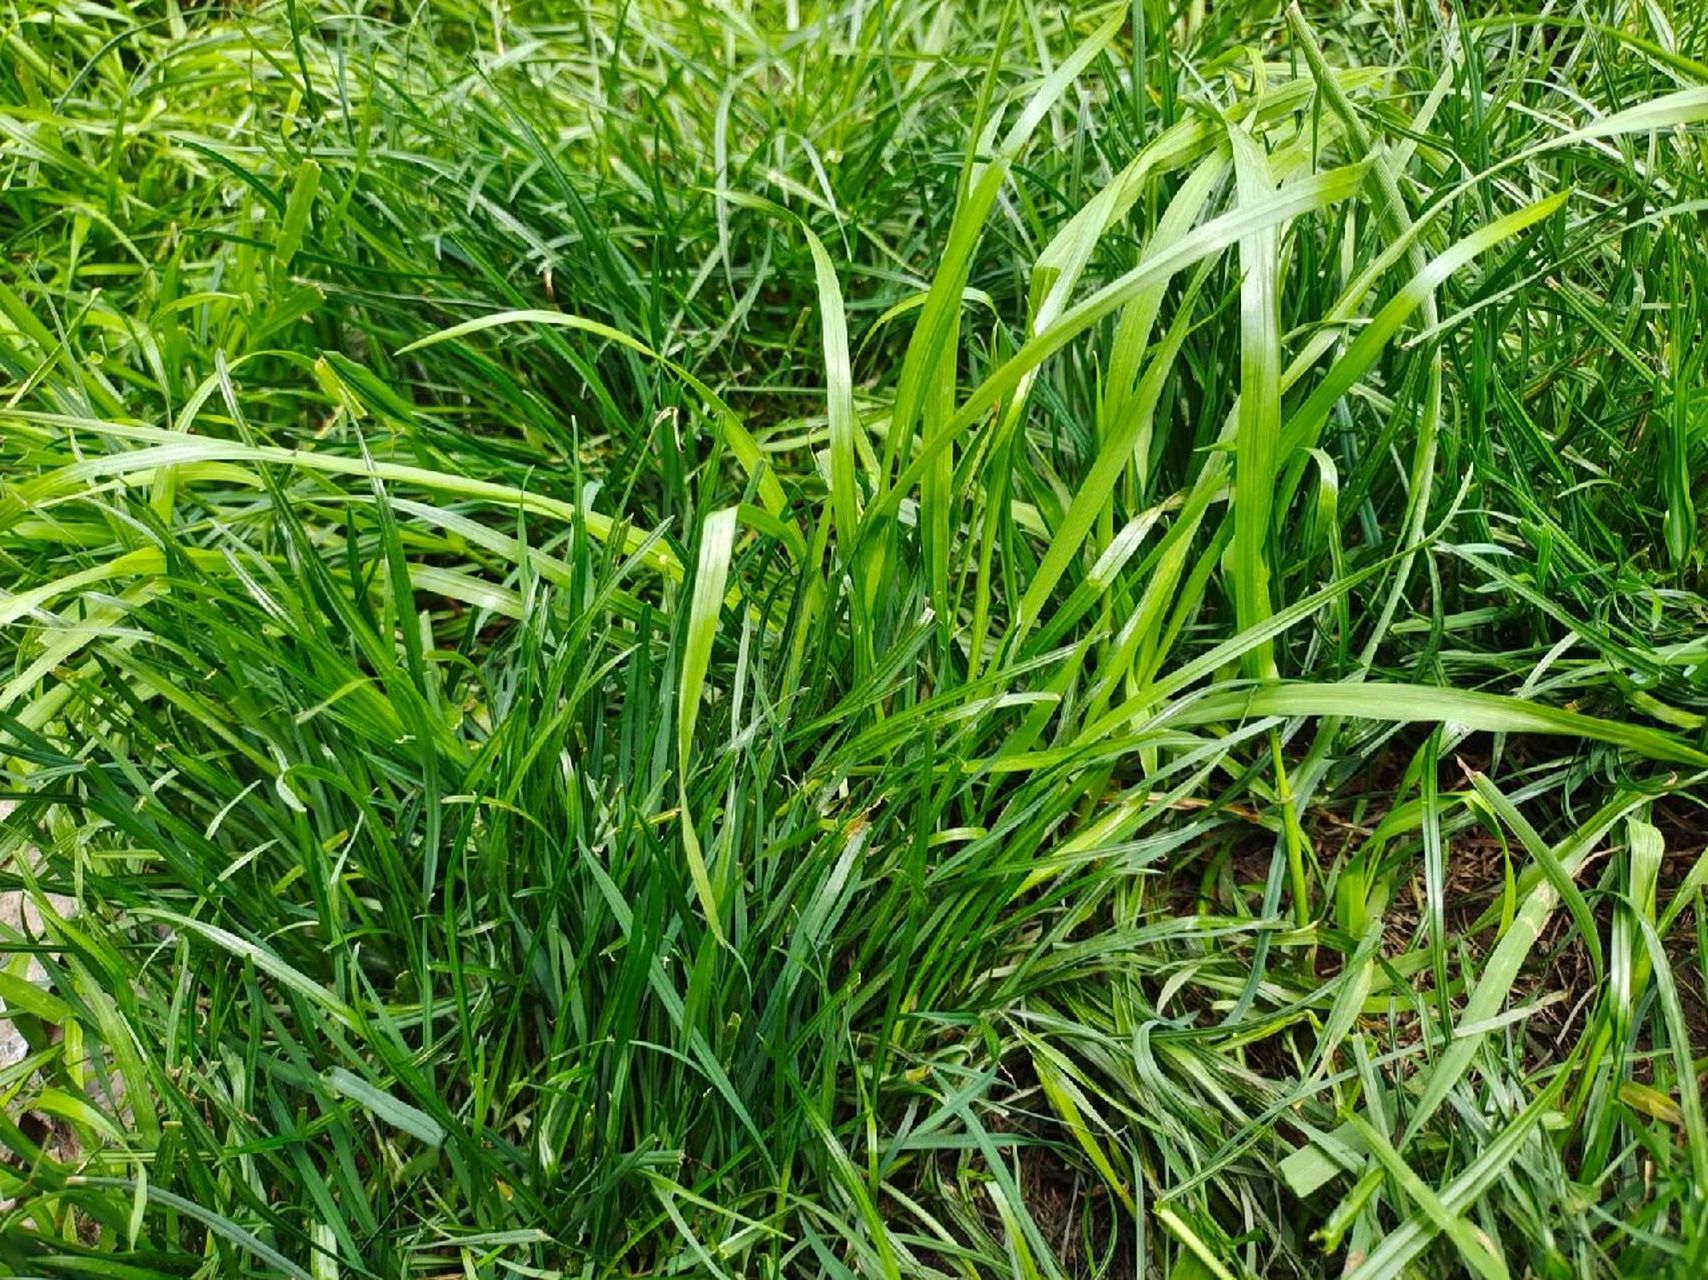 江南地区草坪测评——(二)黑麦草 首先要说明,黑麦草买草籽的话在网上